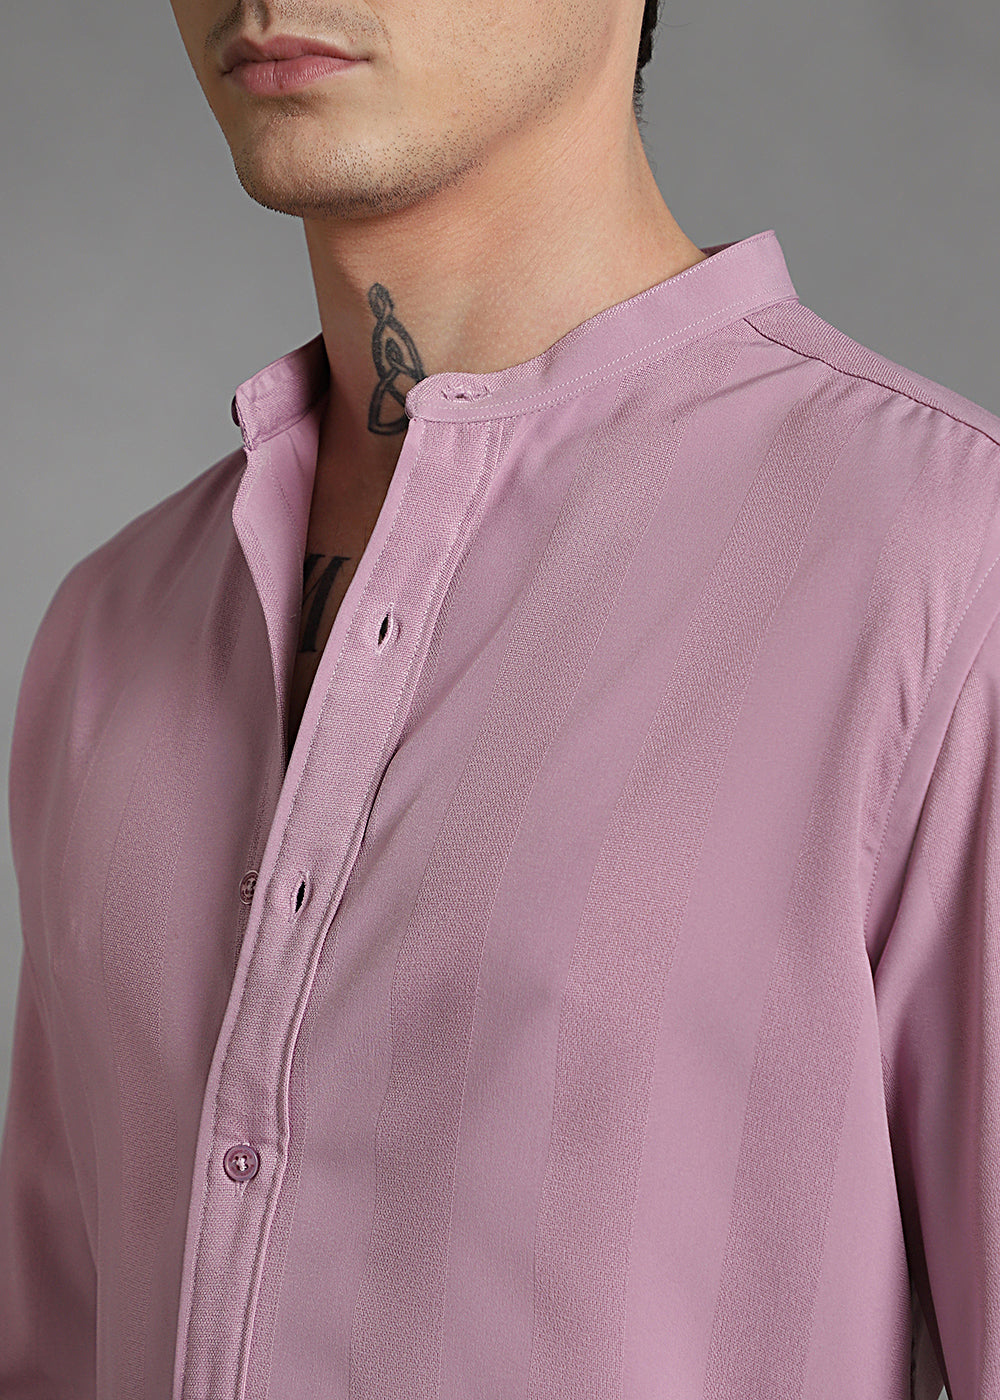 Rose Pink Shein Patterned Shirt